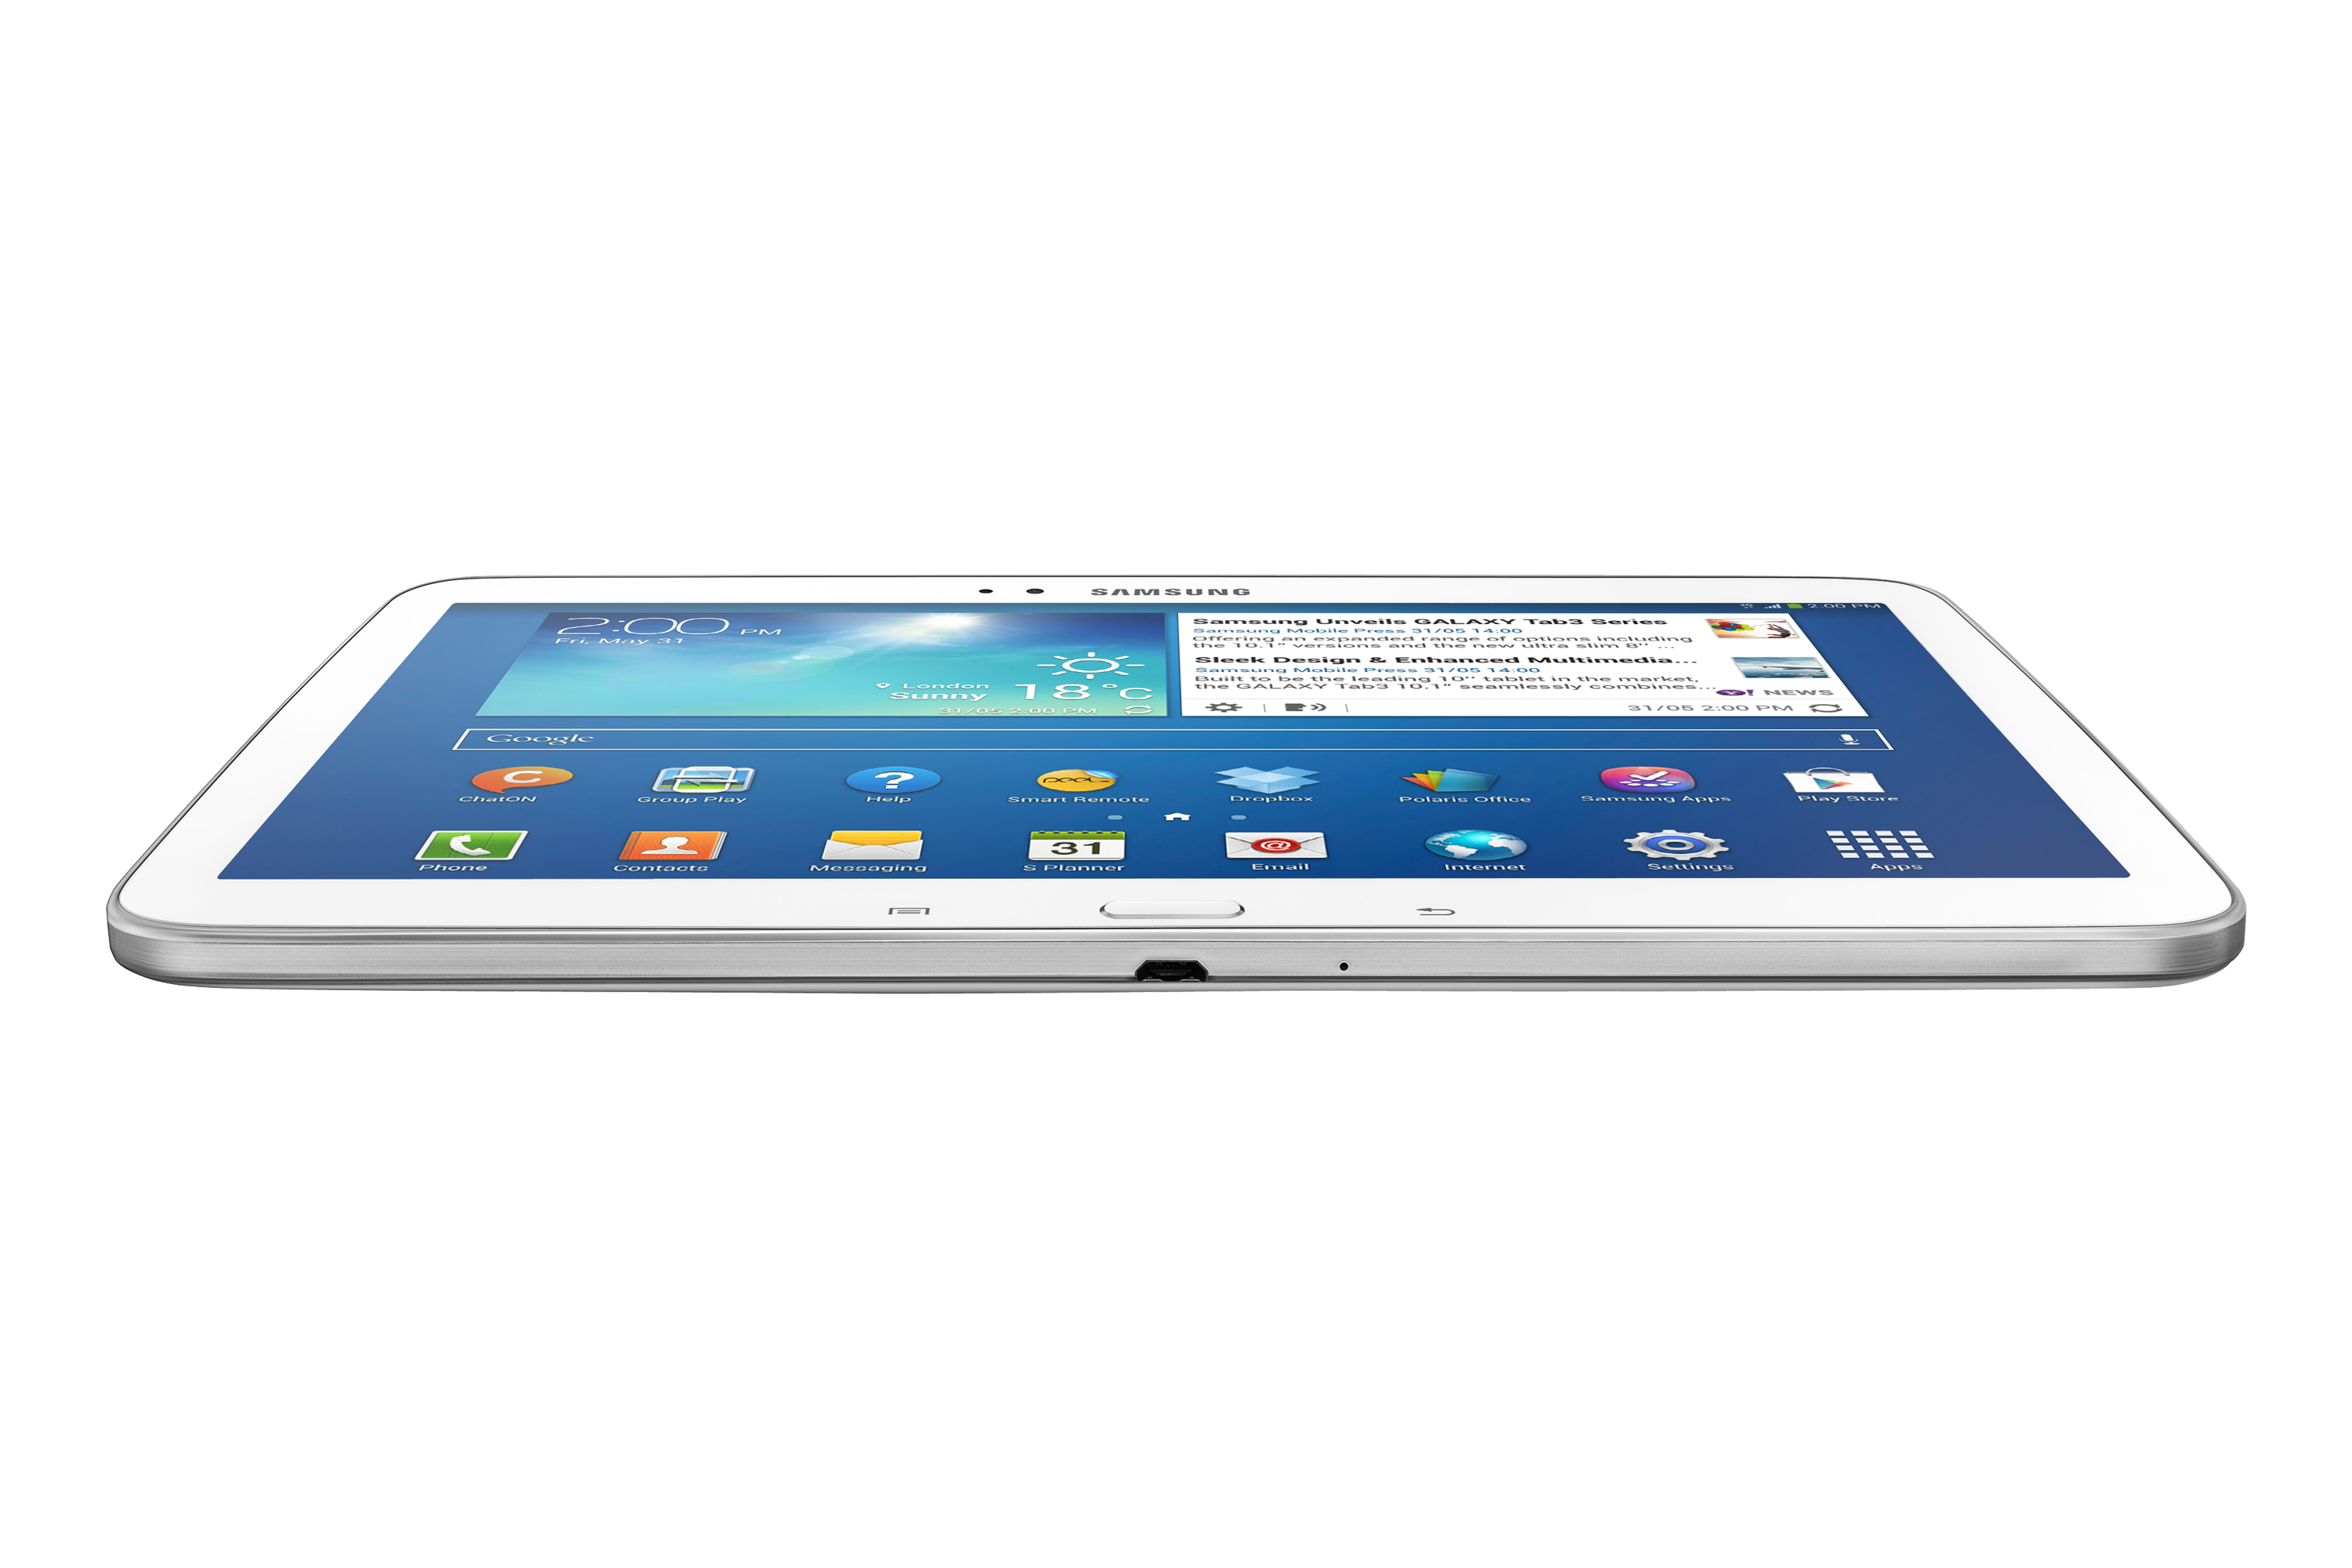 Samsung Galaxy 10 1 16gb